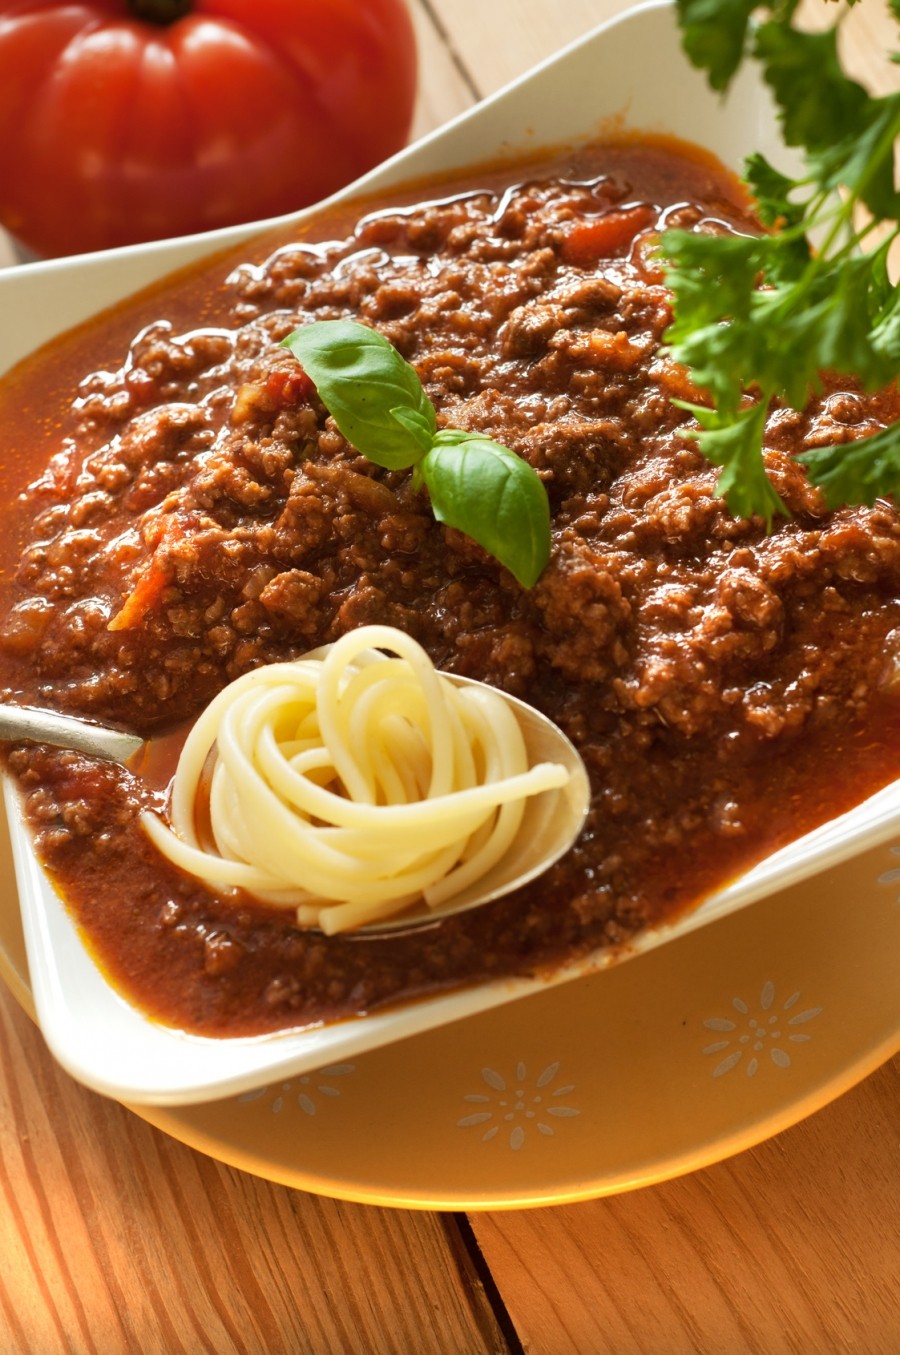 Die Gehackten-Sauce ist eine dickflüssige Sauce, die ideal zu Spaghetti passt. Ein preiswertes Gericht, das satt macht.